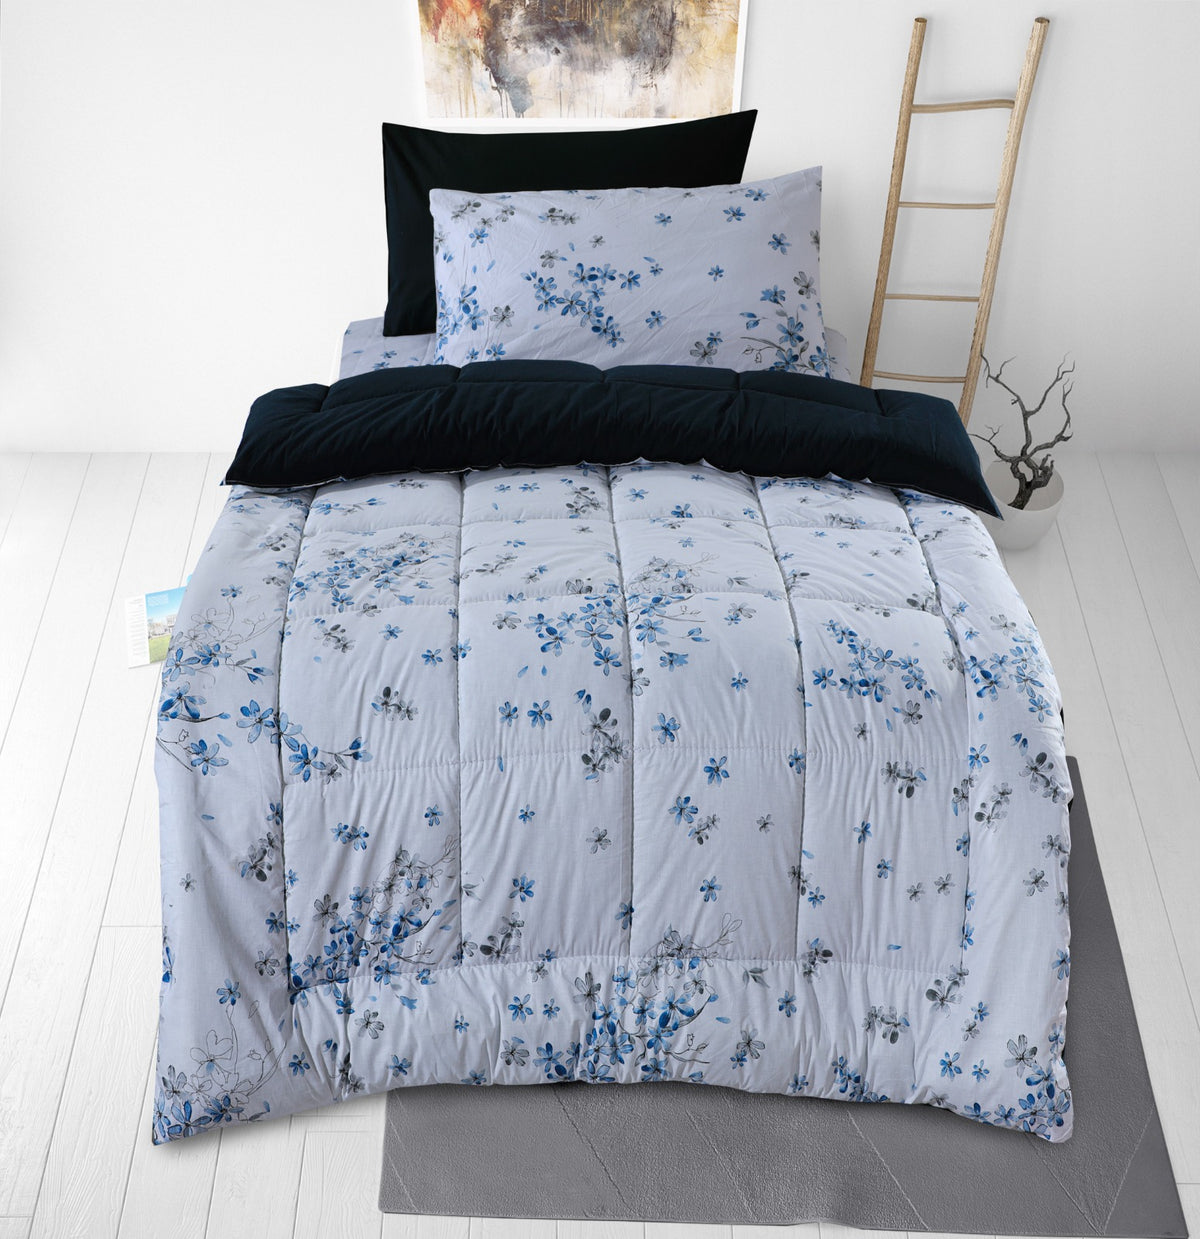 Sky flowers - Single Winter Comforter set (Heavy Filling).